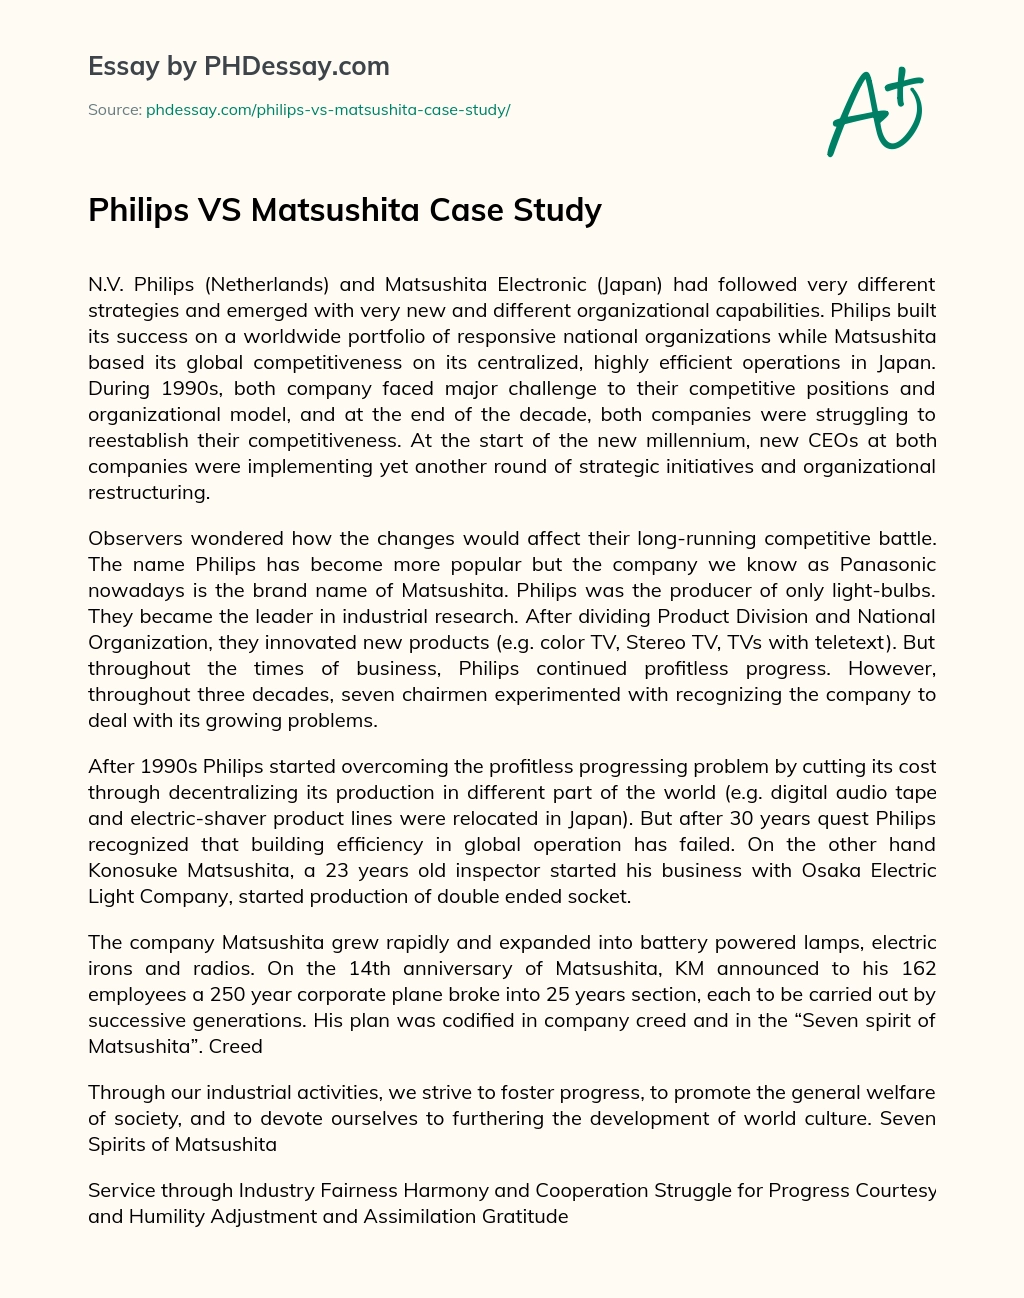 Philips VS Matsushita Case Study essay